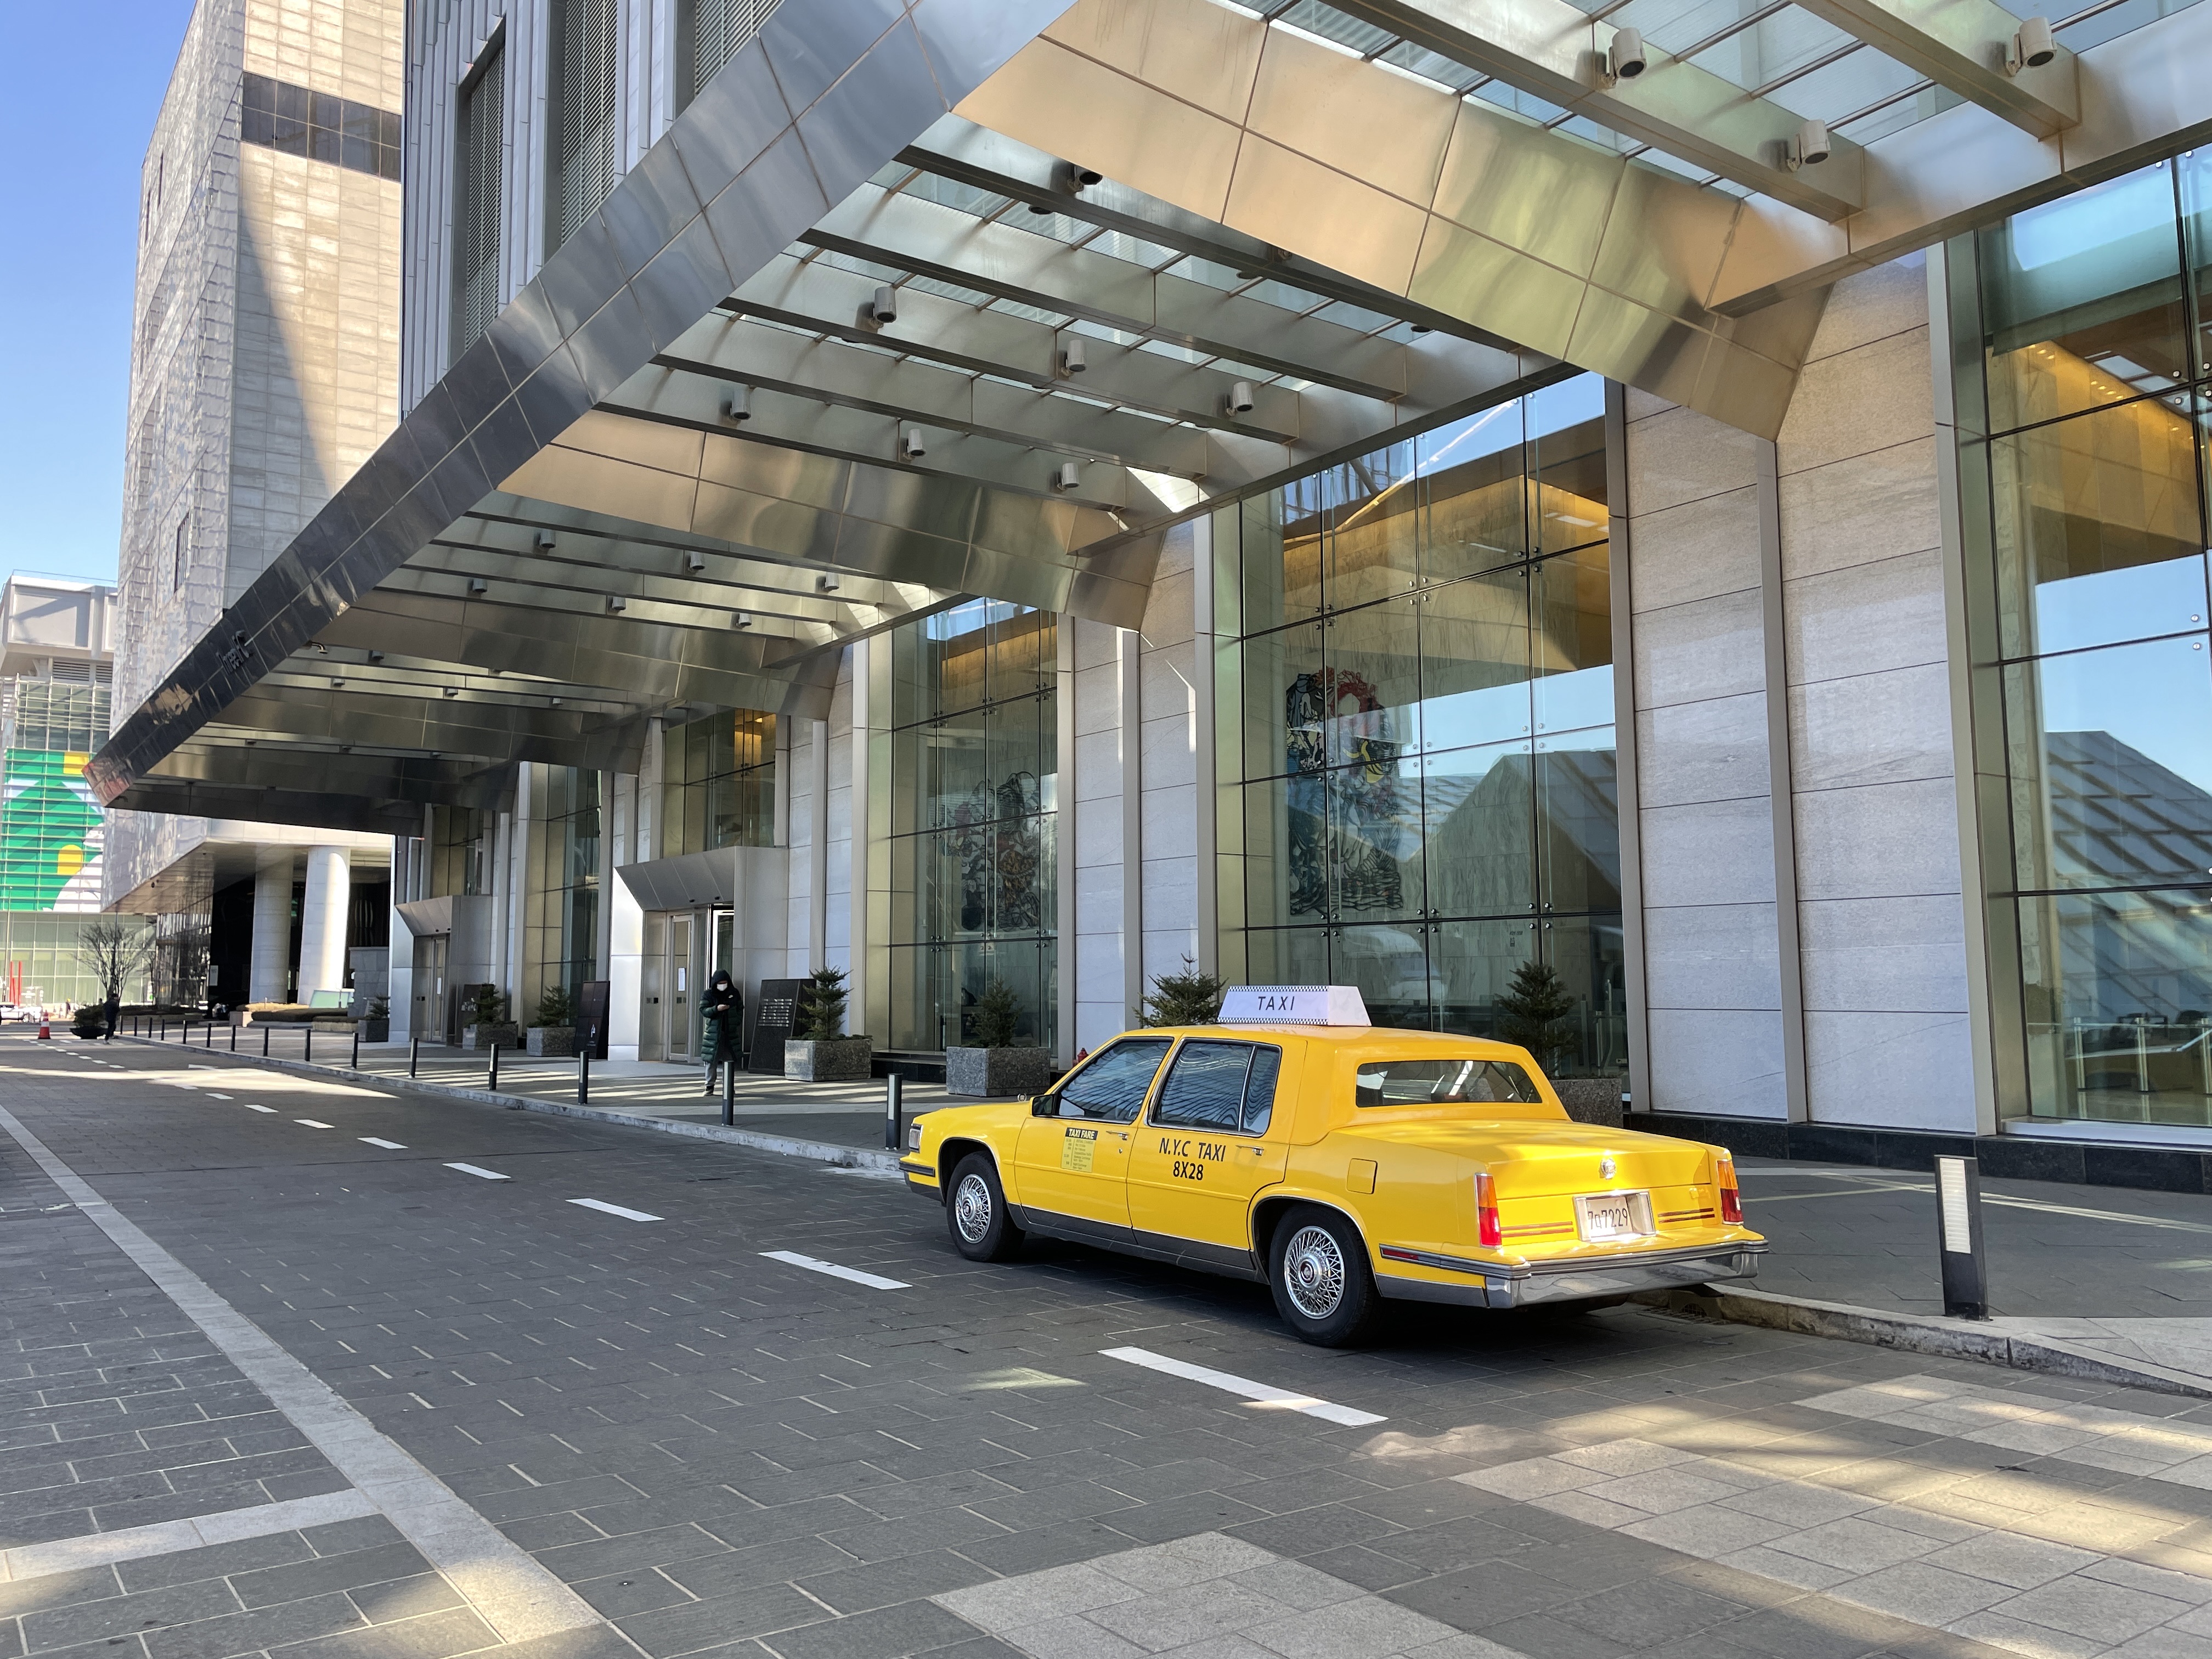 1986 cadillac fleetwood (newyork taxi)